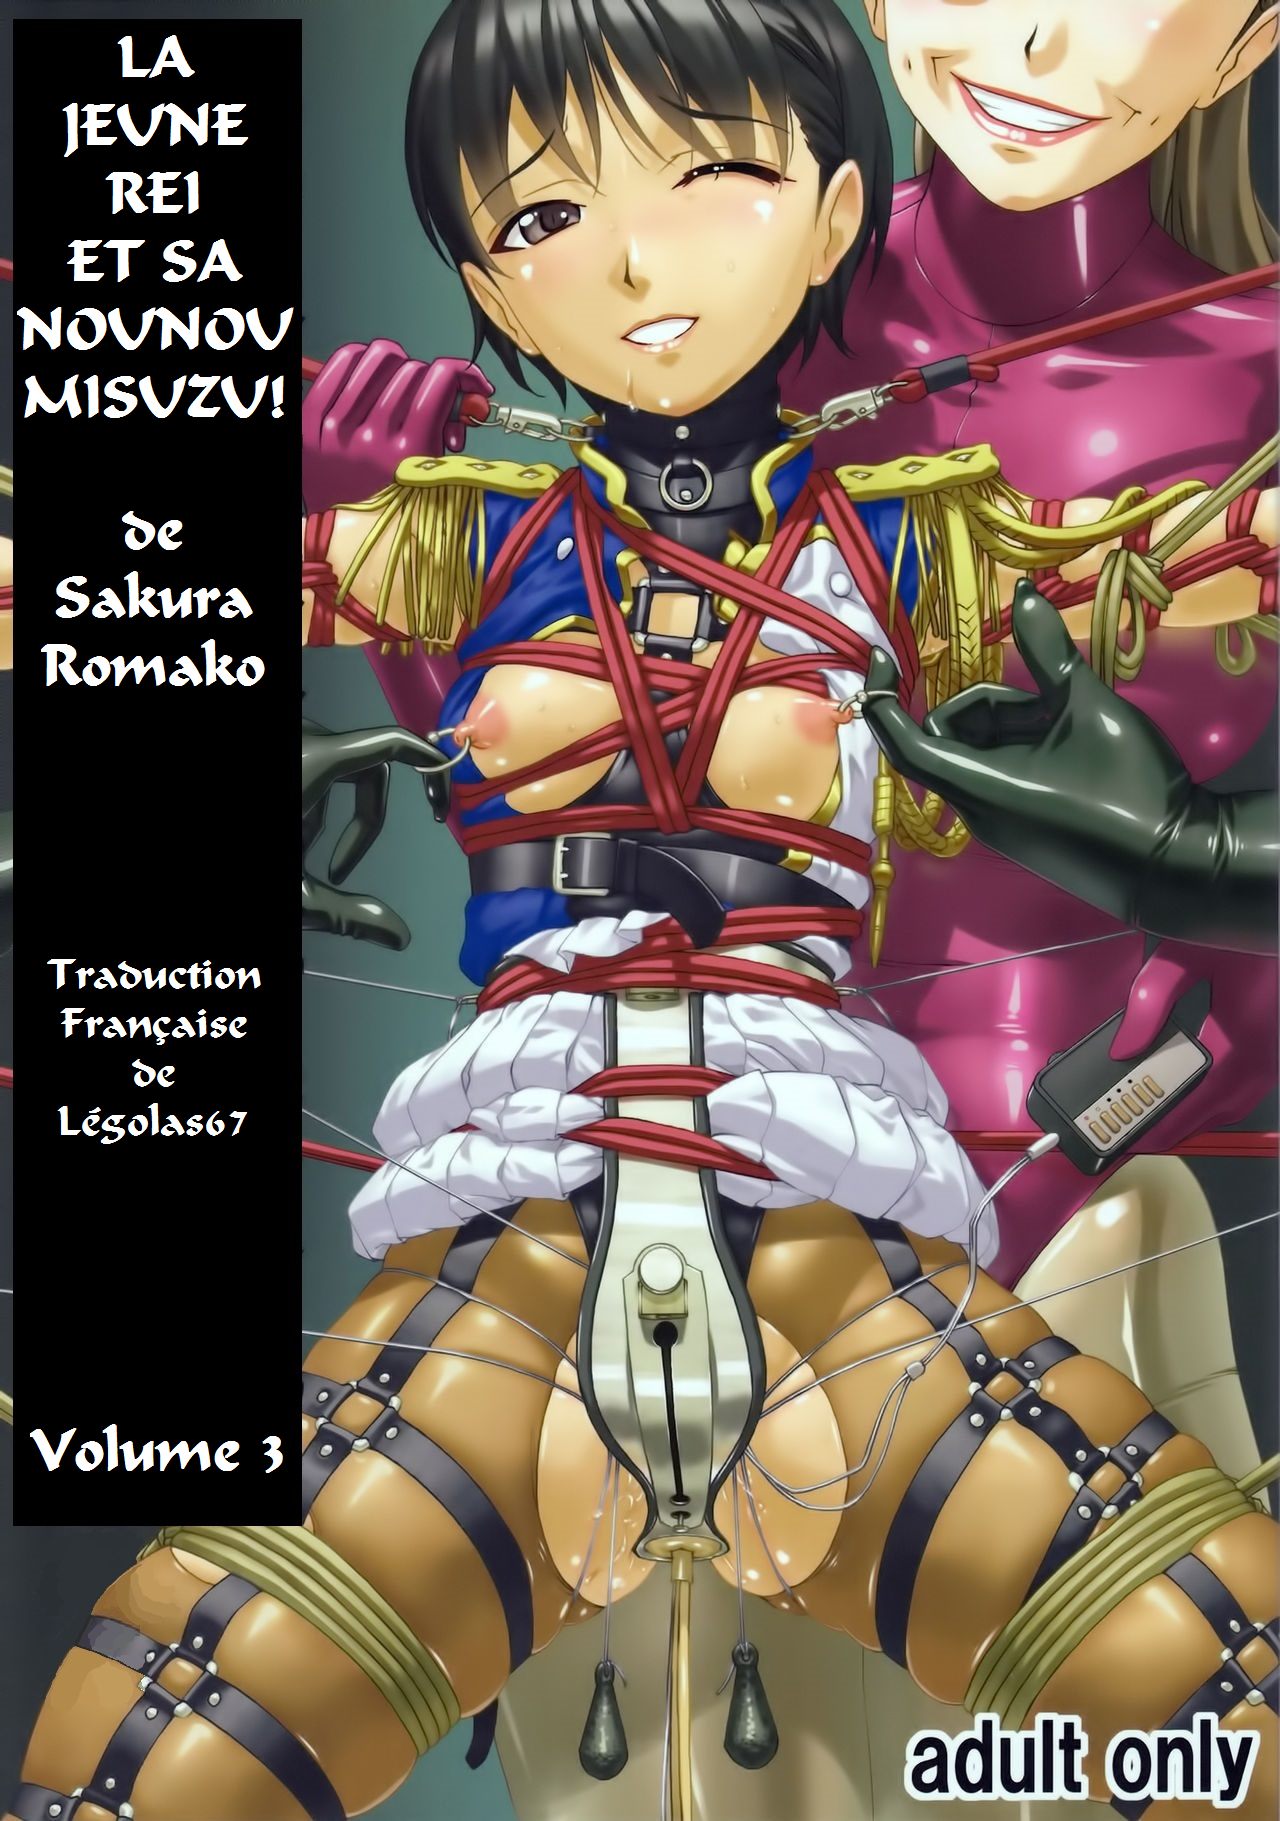 Anoko ga Natsuyasumi ni Ryokou saki de Oshiri no Ana o Kizetsu suru hodo Naburare Tsuzukeru Manga 2  La jeune Rei et sa nounou Misuzu. Volume 3